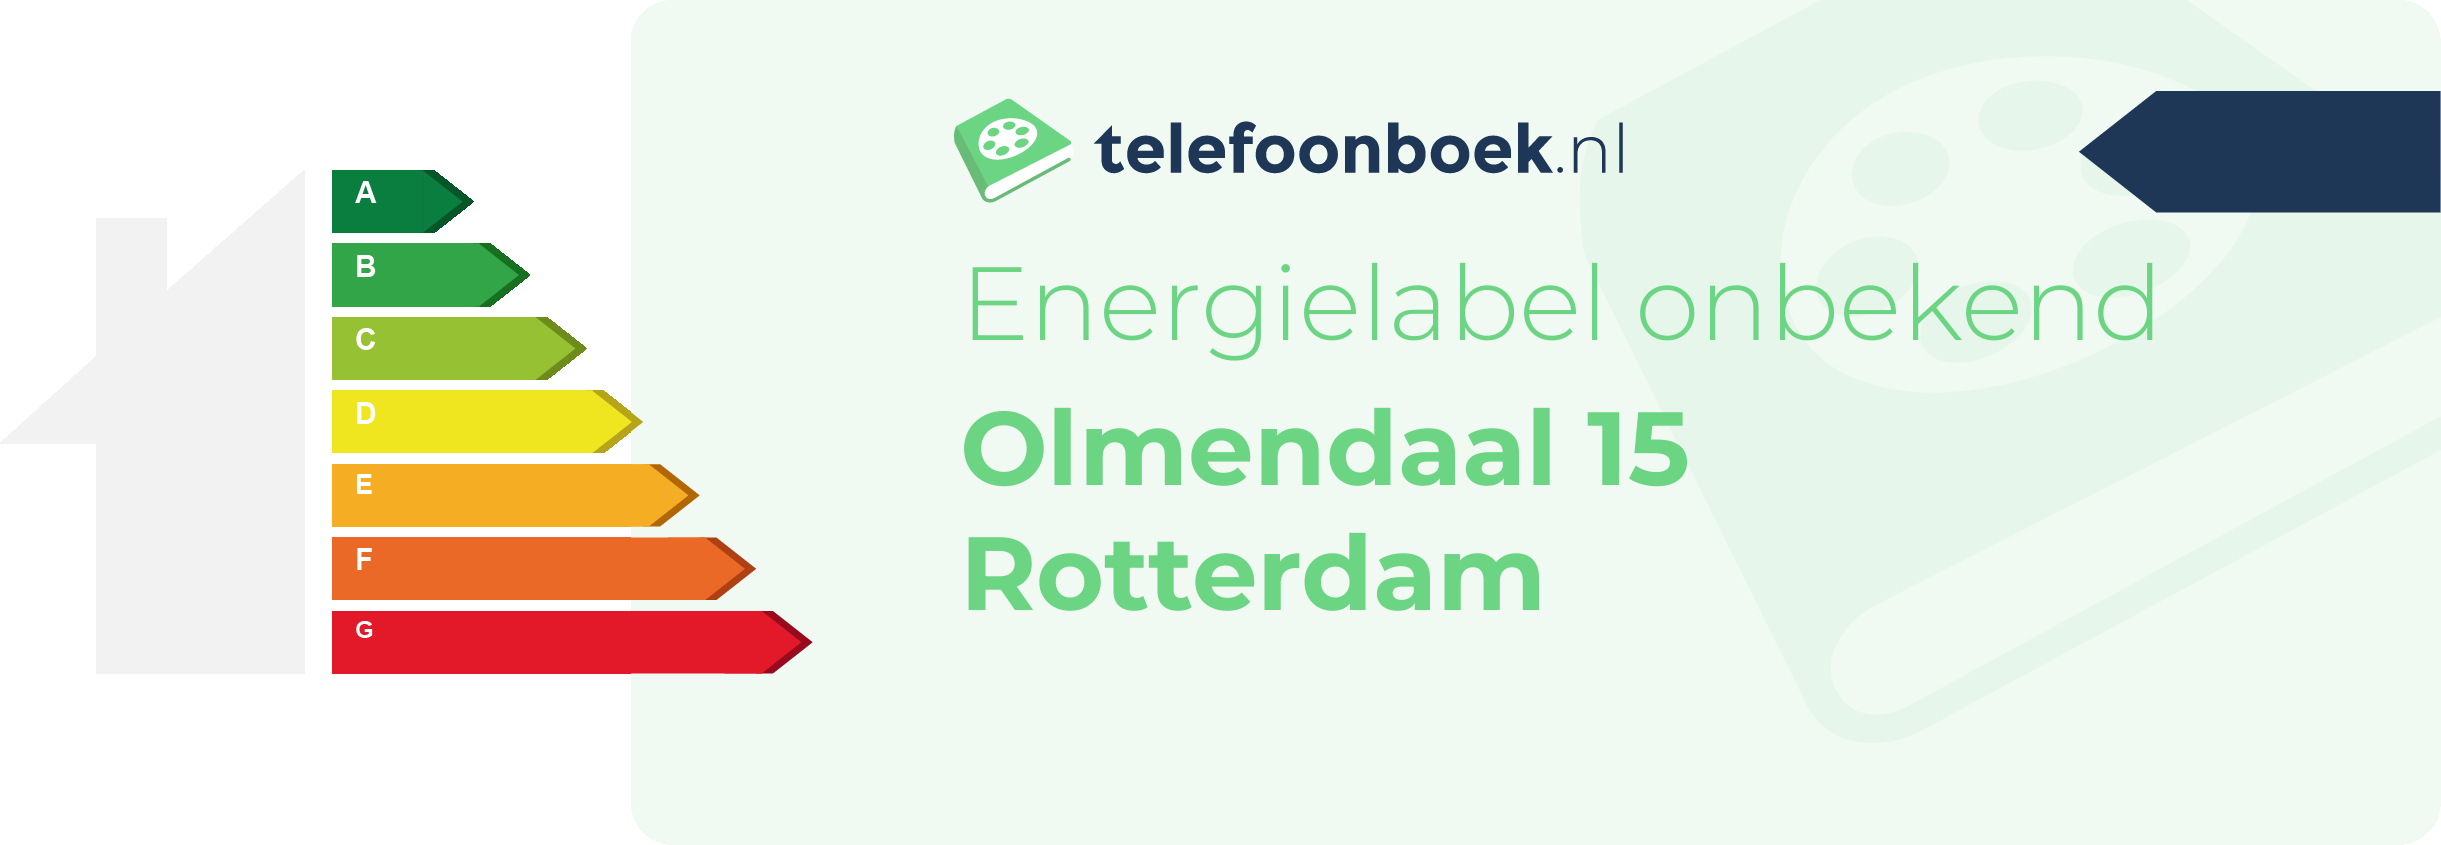 Energielabel Olmendaal 15 Rotterdam